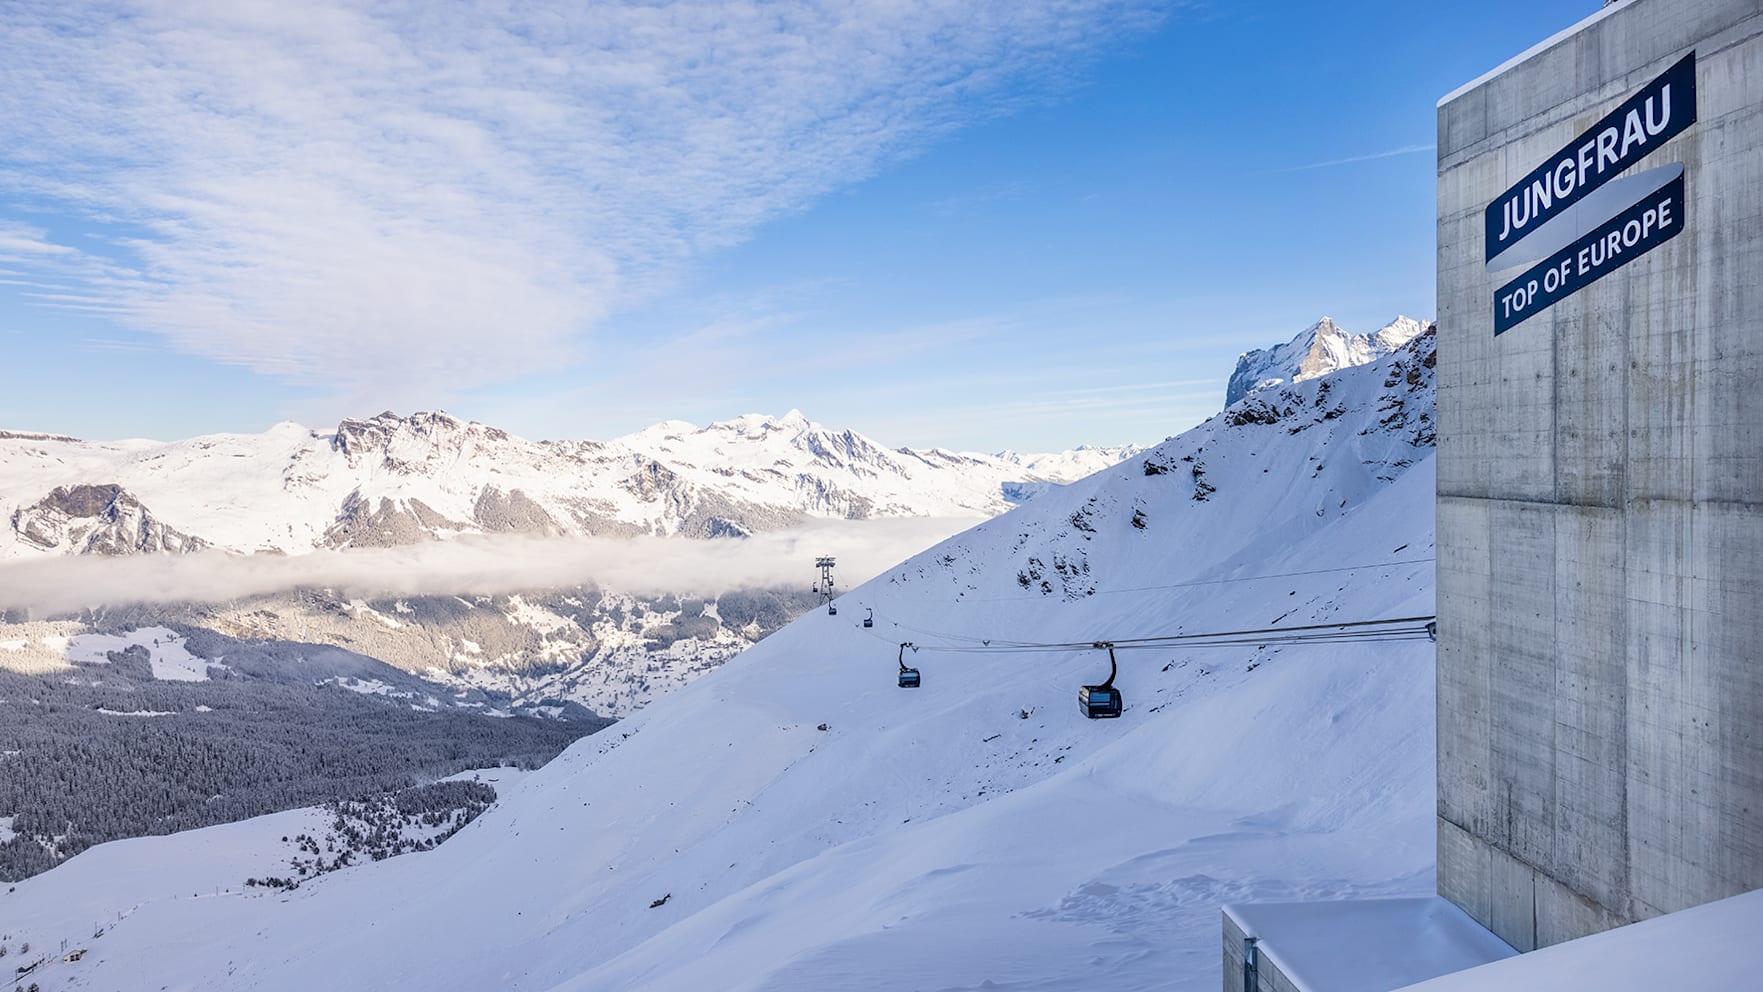 Eigergletscher Eiger Express Grindelwald Winter